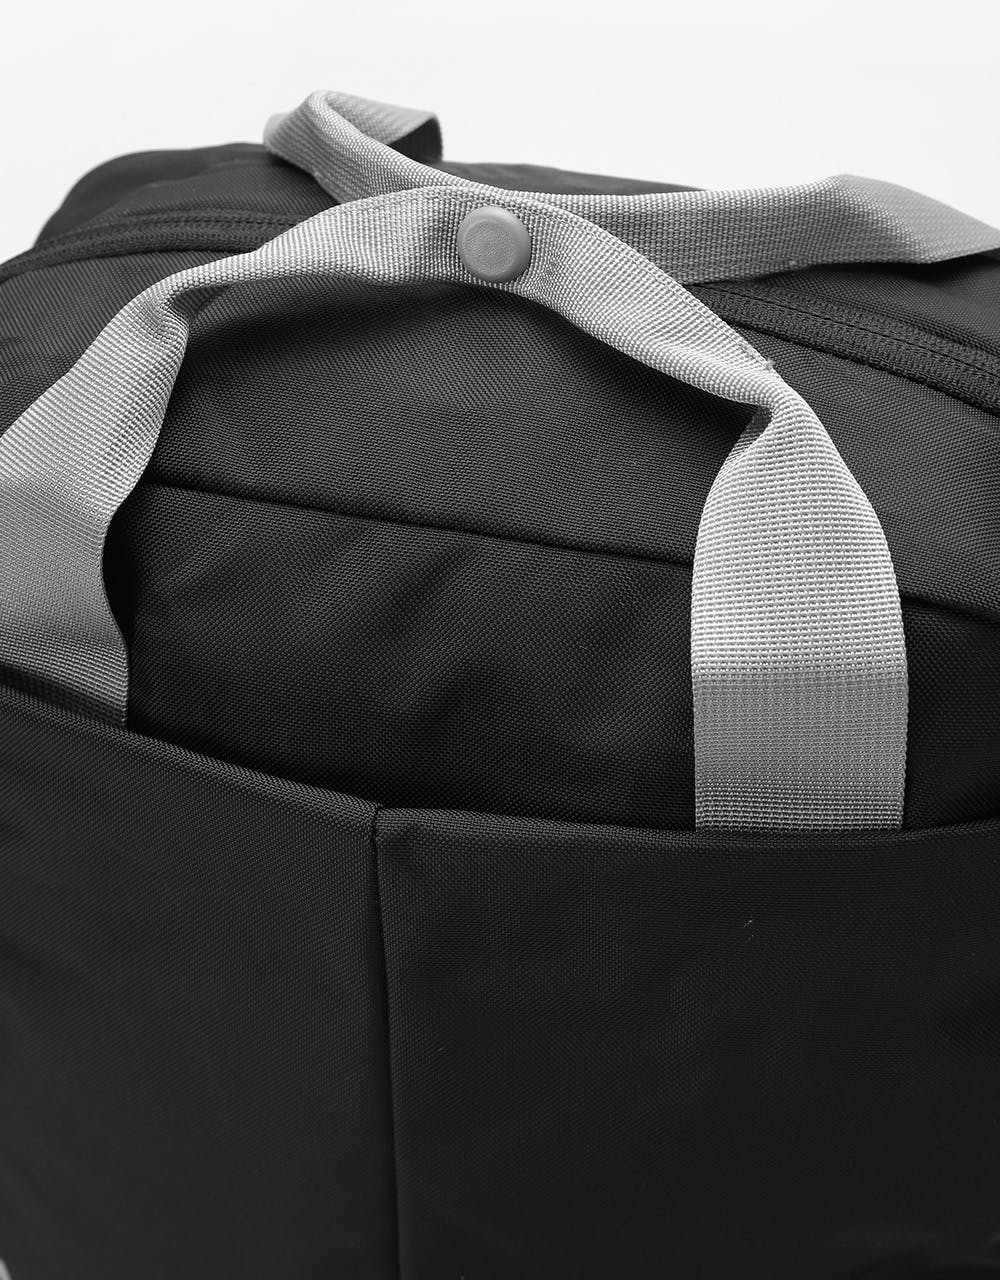 Patagonia Tamango Pack 20L Backpack - Black